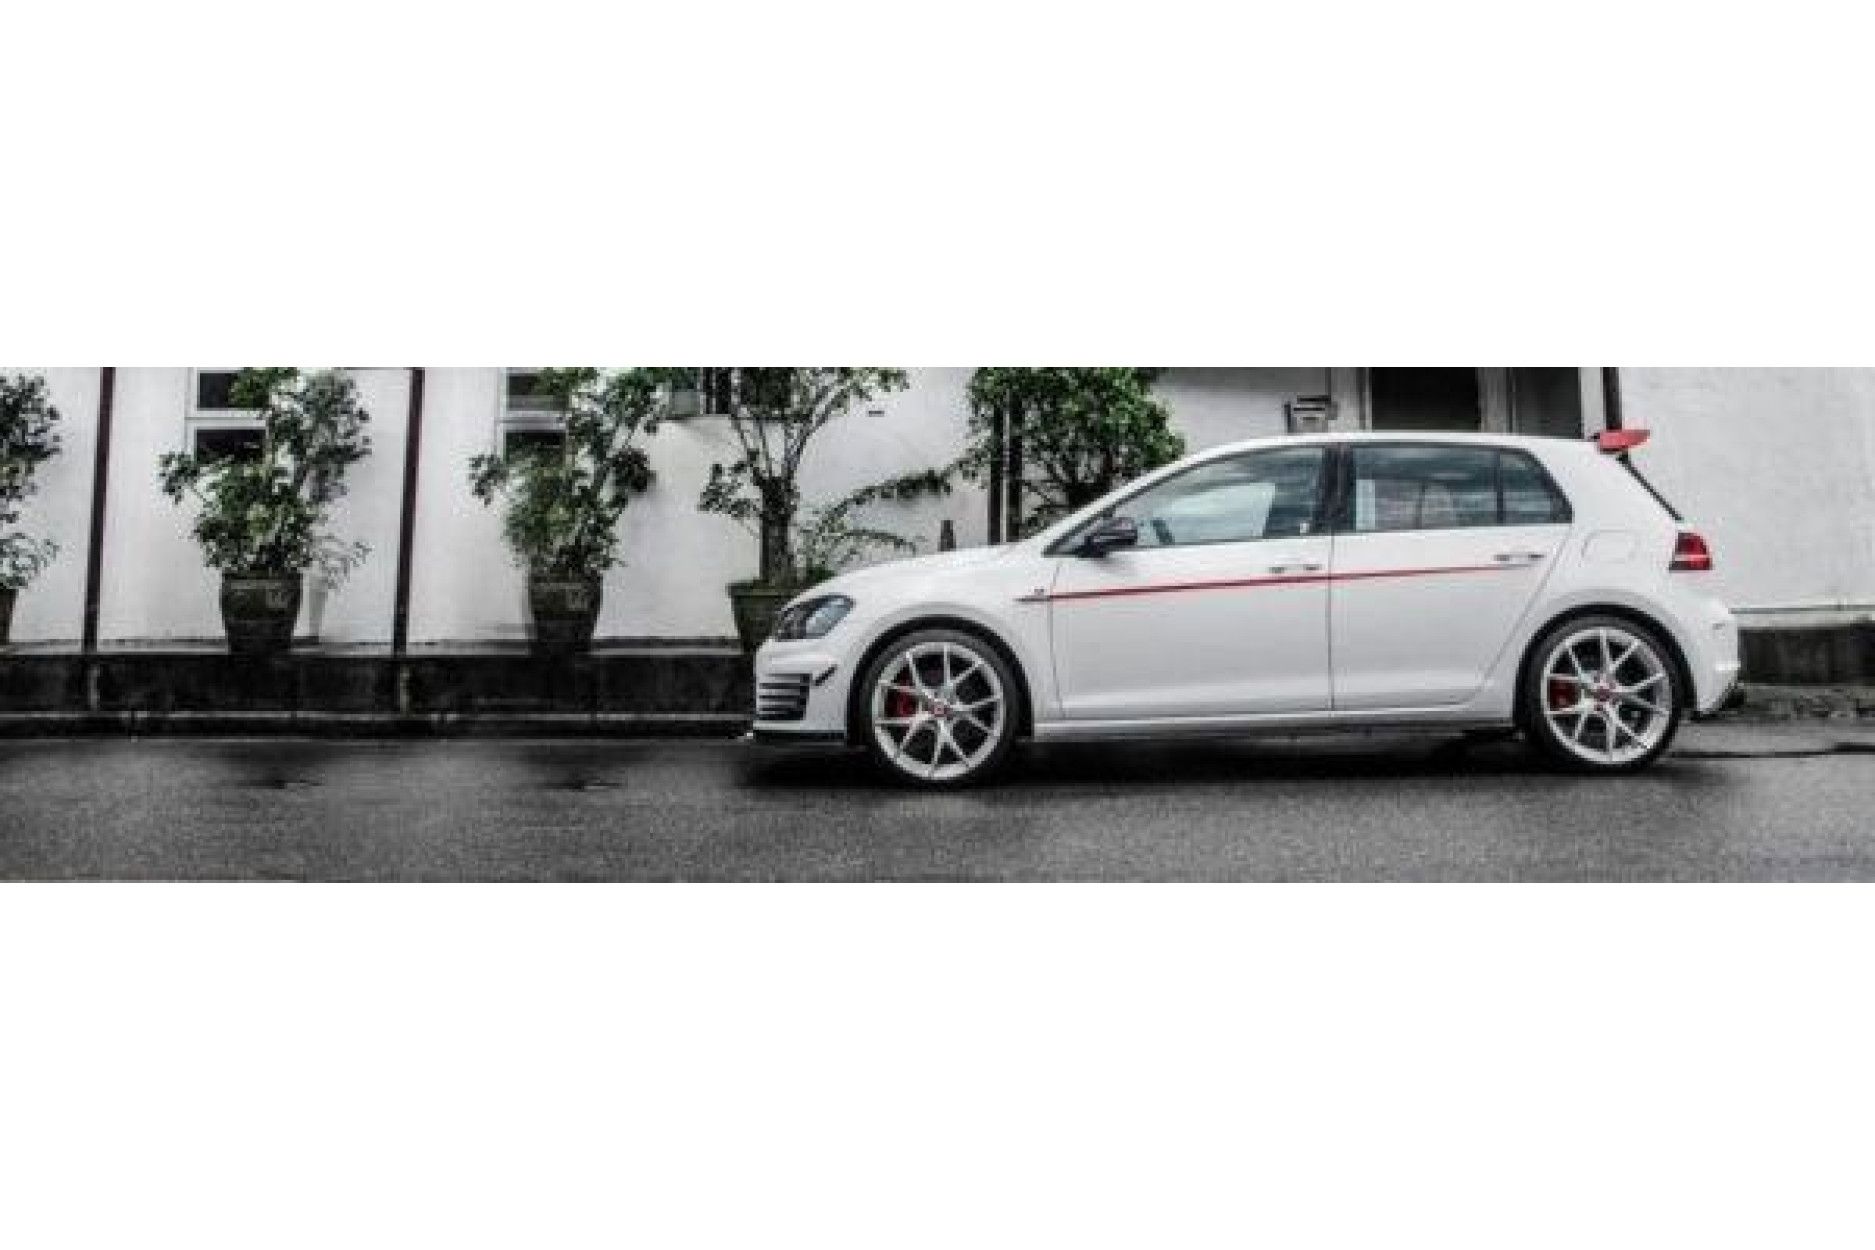 RevoZport Carbon Bodykit for Volkswagen Golf MK7|Golf 7 GTI pre-facelift "Razor 7" (2) 